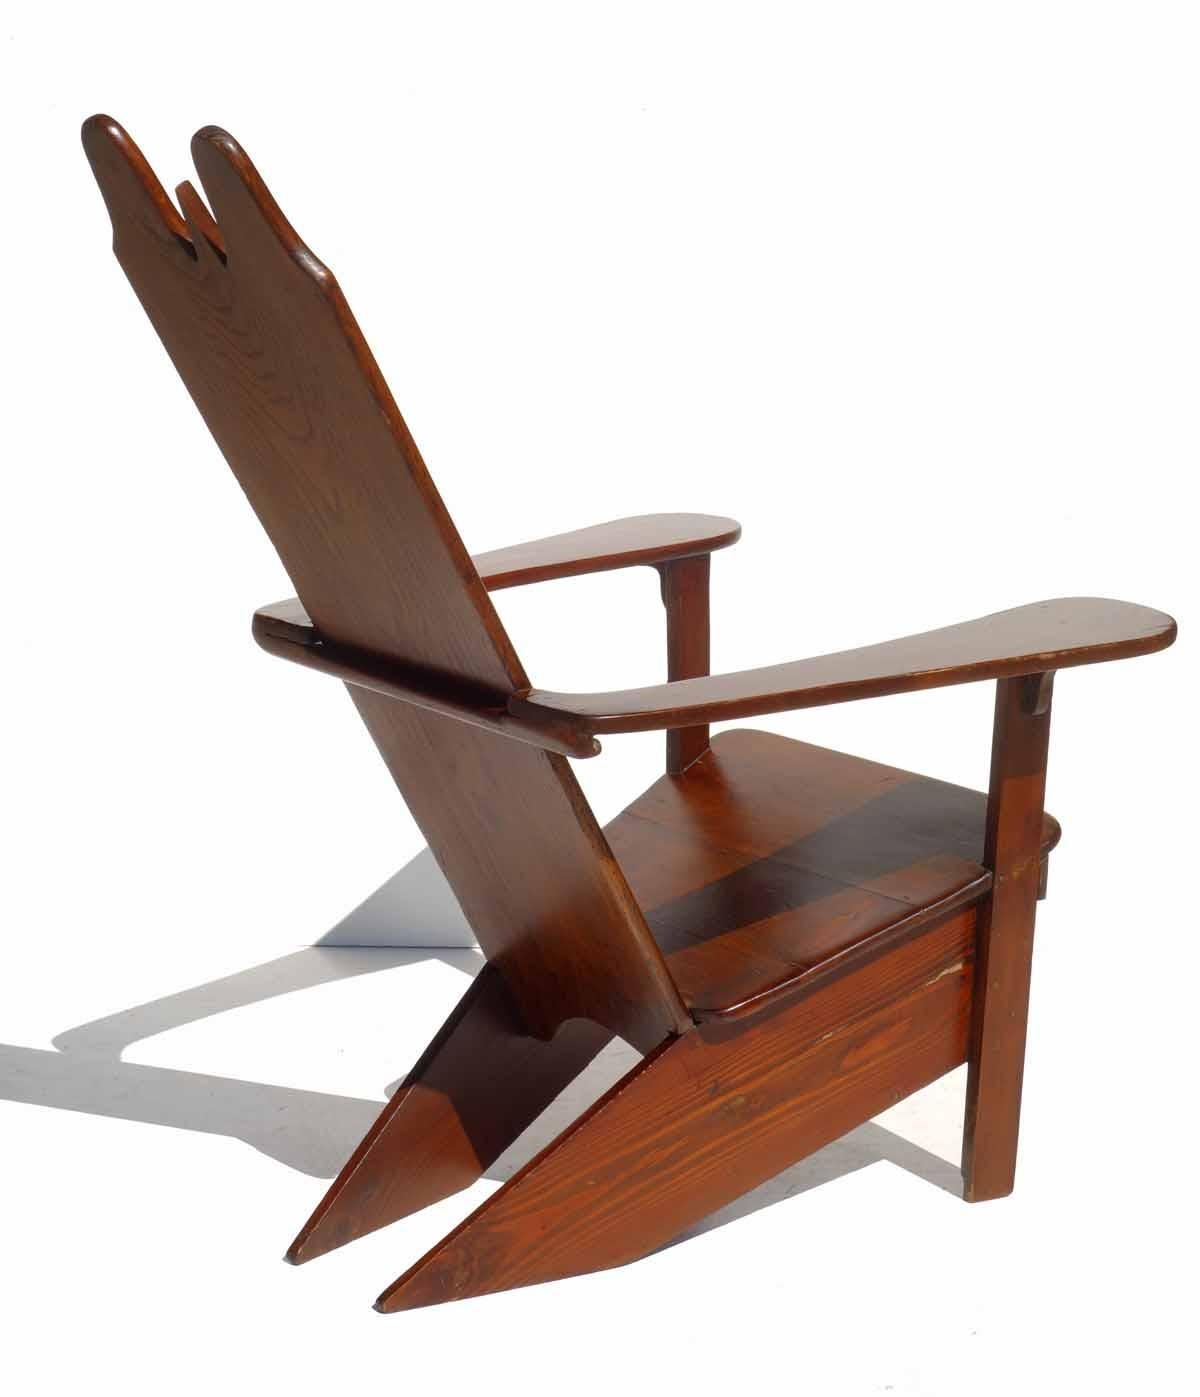 Rustique Fauteuil de salon en bois du design italien Rationalist Gino Levi Montalcini des années 1930 en vente